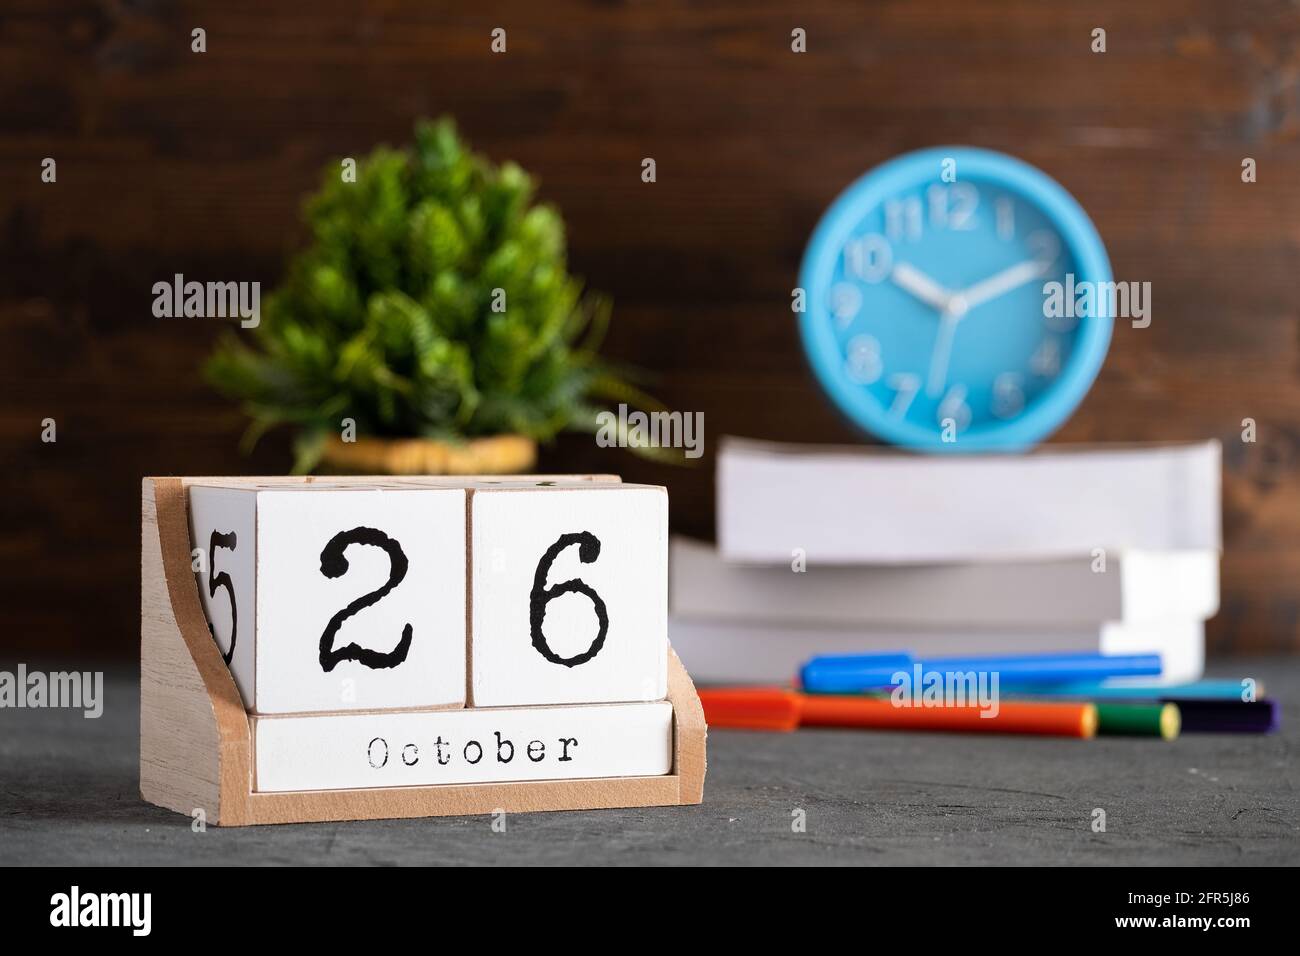 26 octobre. Octobre 26 calendrier cube en bois avec objets flous sur fond. Banque D'Images